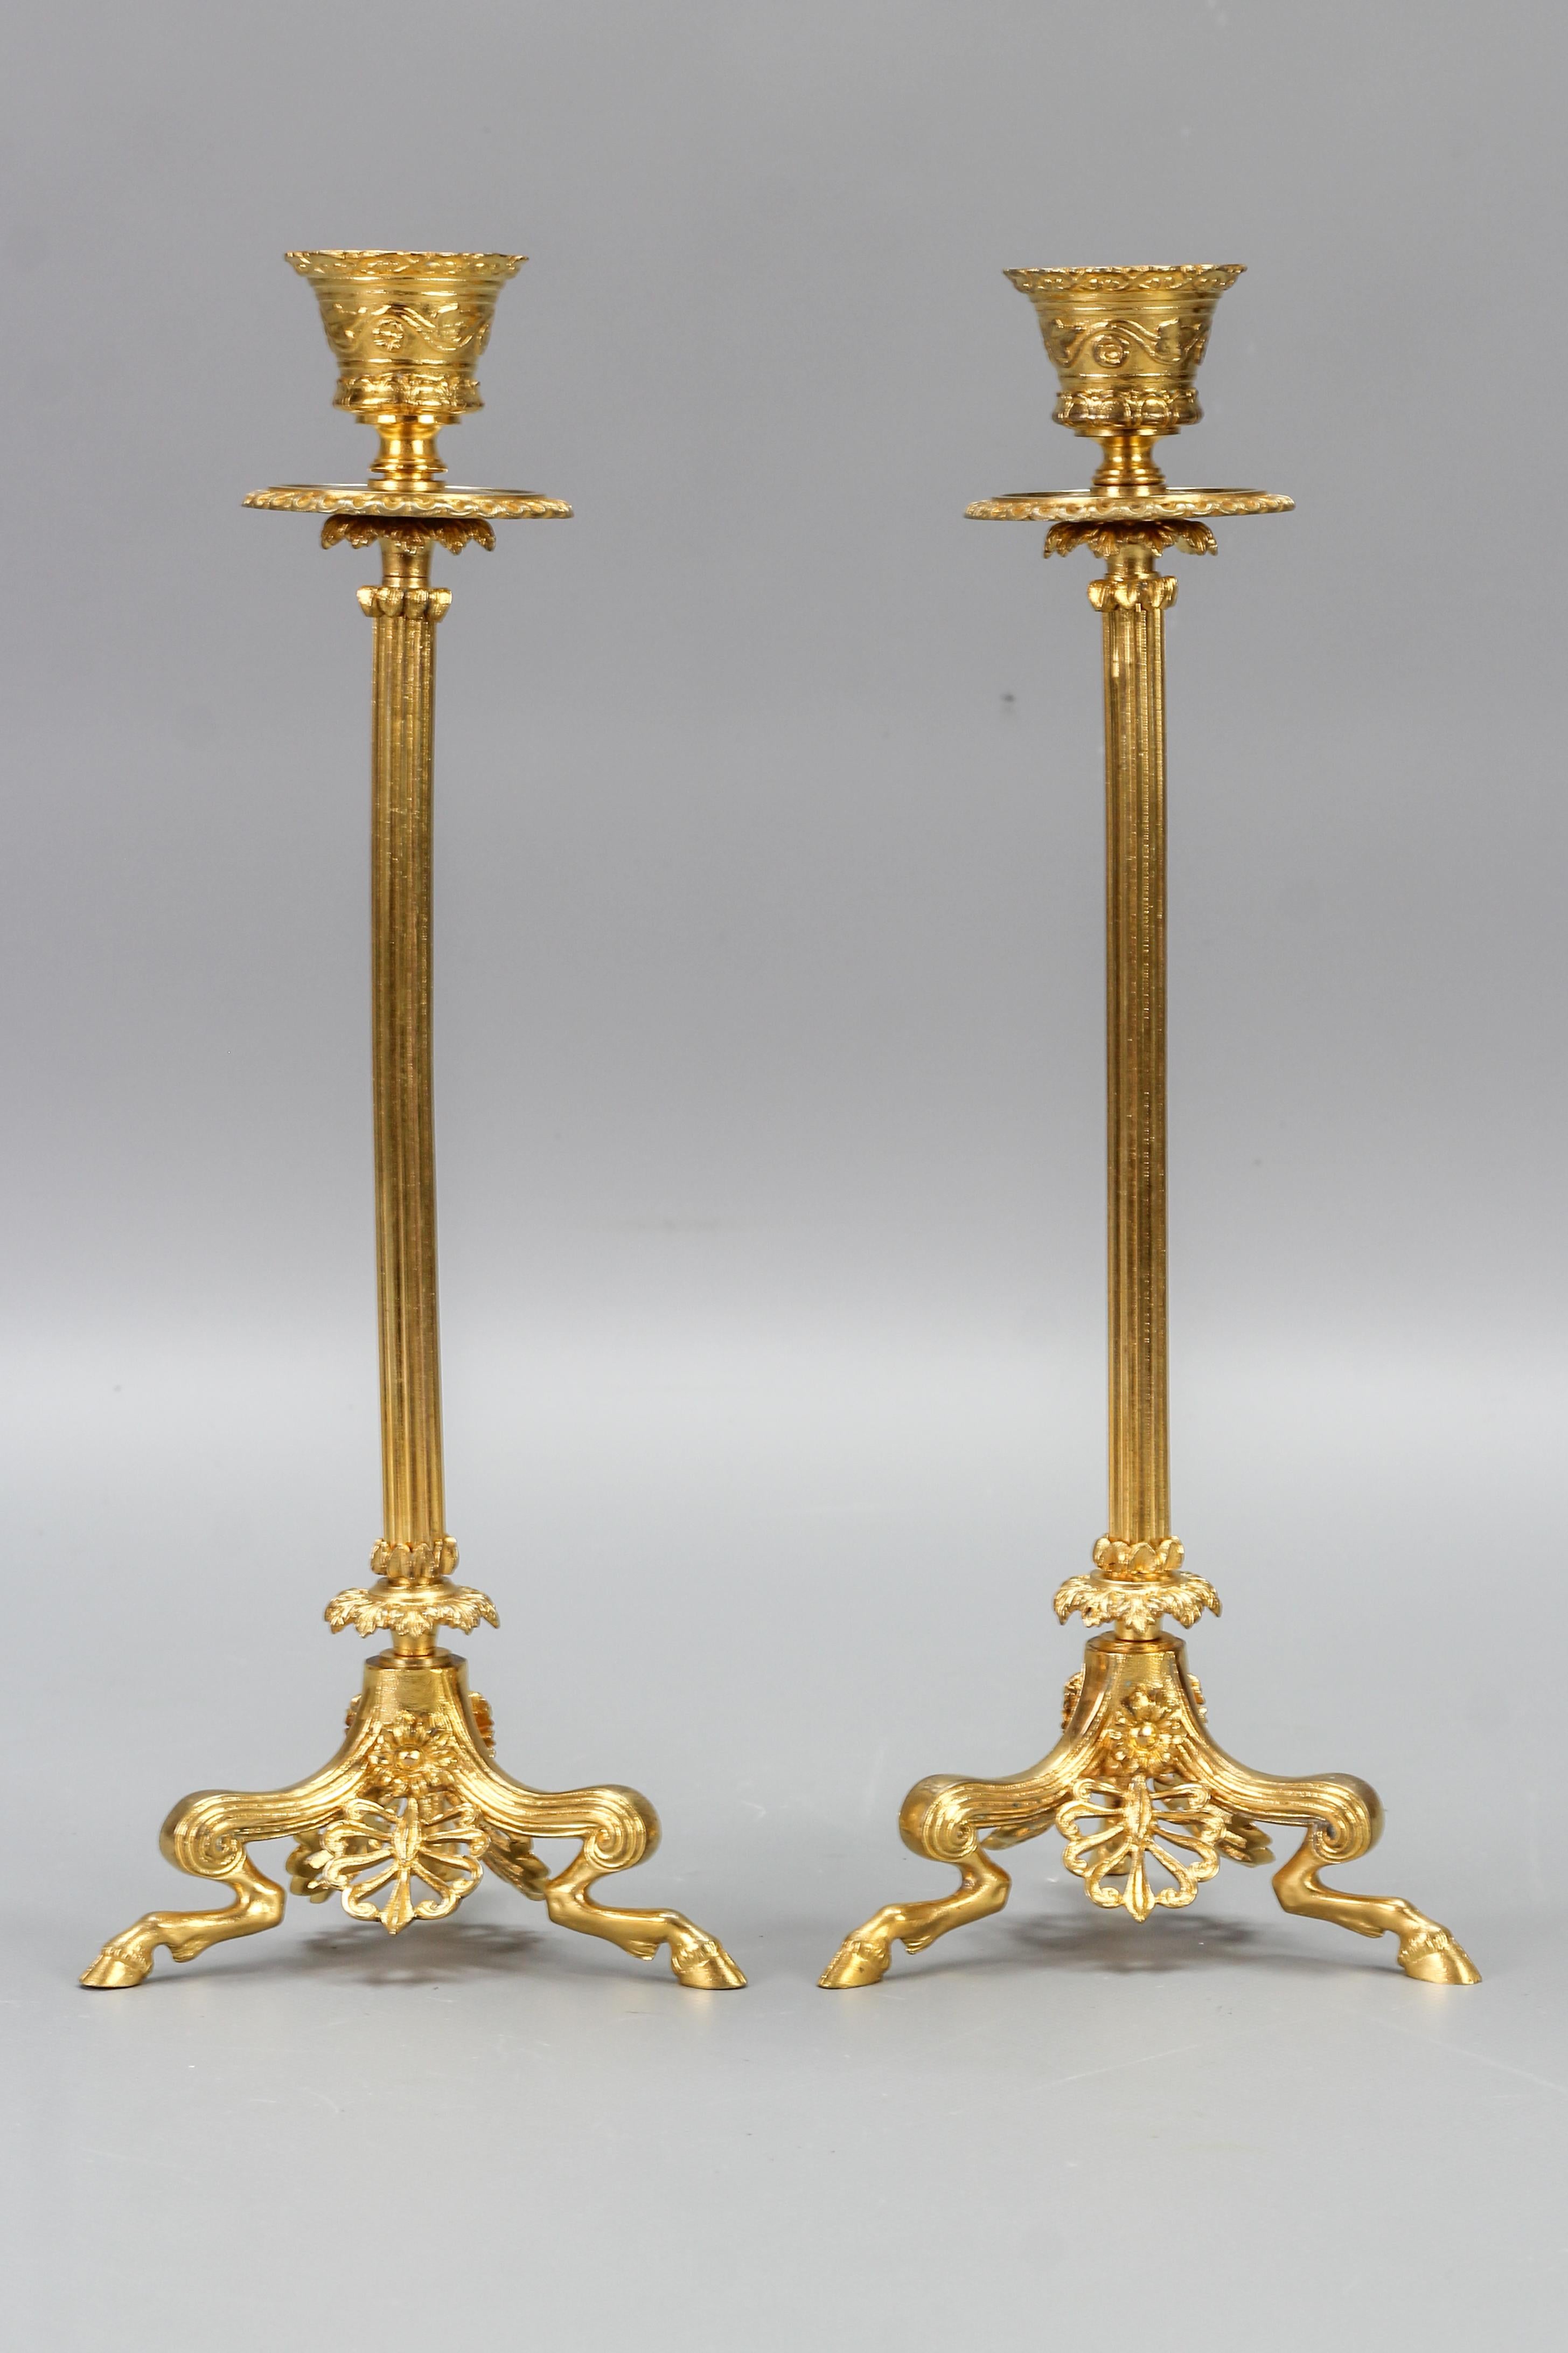 Ein Paar vergoldete Bronzekerzenhalter im französischen Empire-Stil auf hufbewehrten Faun-Füßen, Ende 19.
Ein Paar feiner französischer Kerzenhalter aus vergoldeter Bronze im Empire-Stil. Eine kannelierte Säule erhebt sich auf drei verkrüppelten